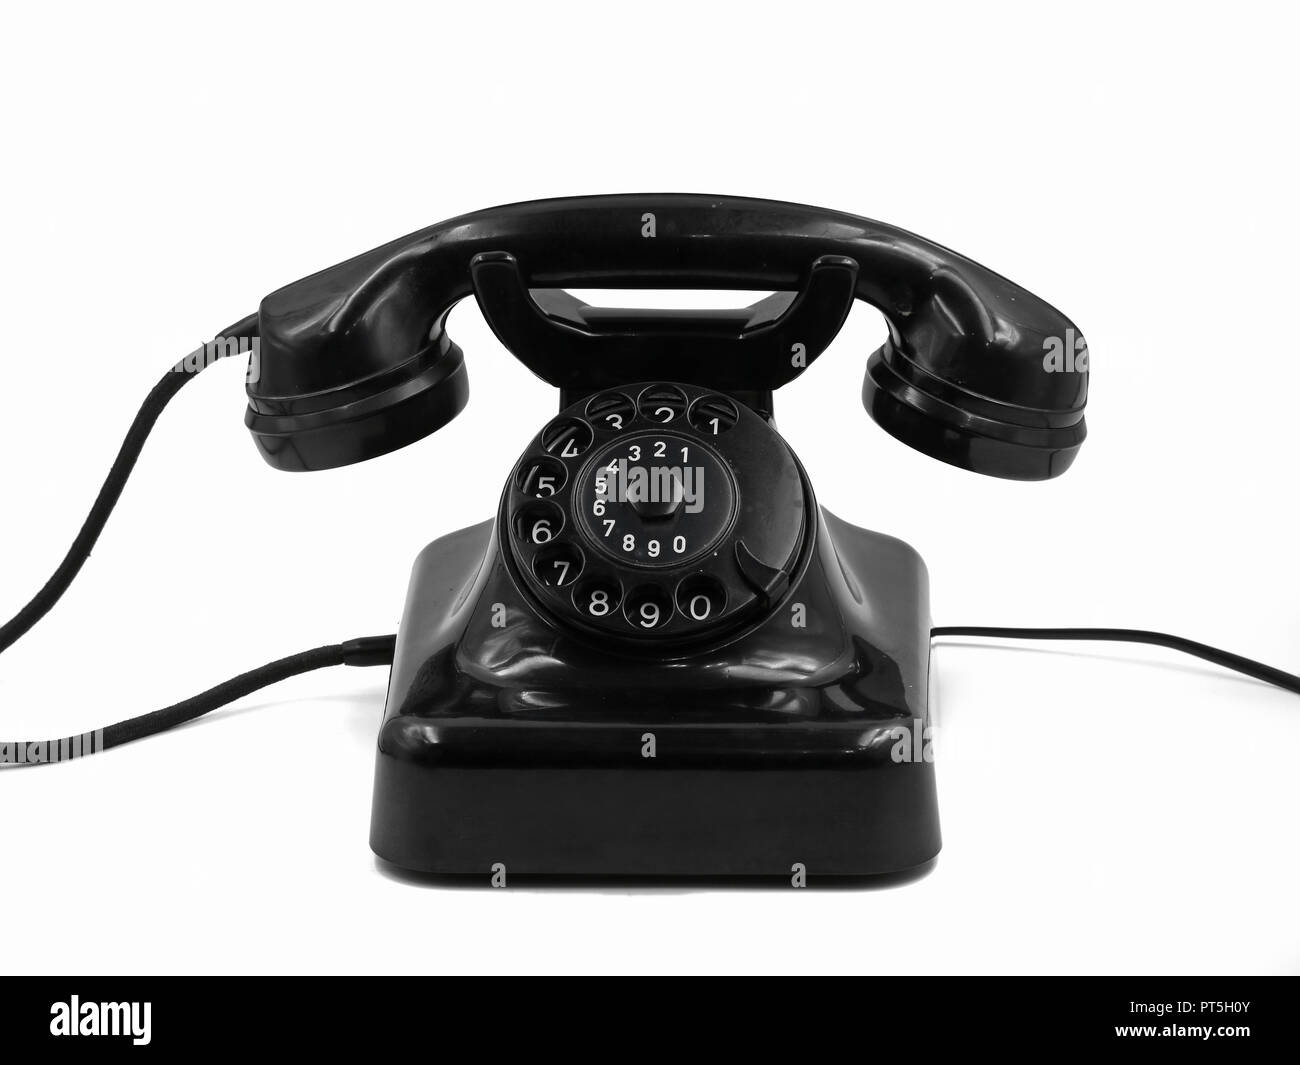 Vista frontale del vecchio nero vintage manopola telefono isolato su sfondo bianco, retrò telefono in bachelite Foto Stock